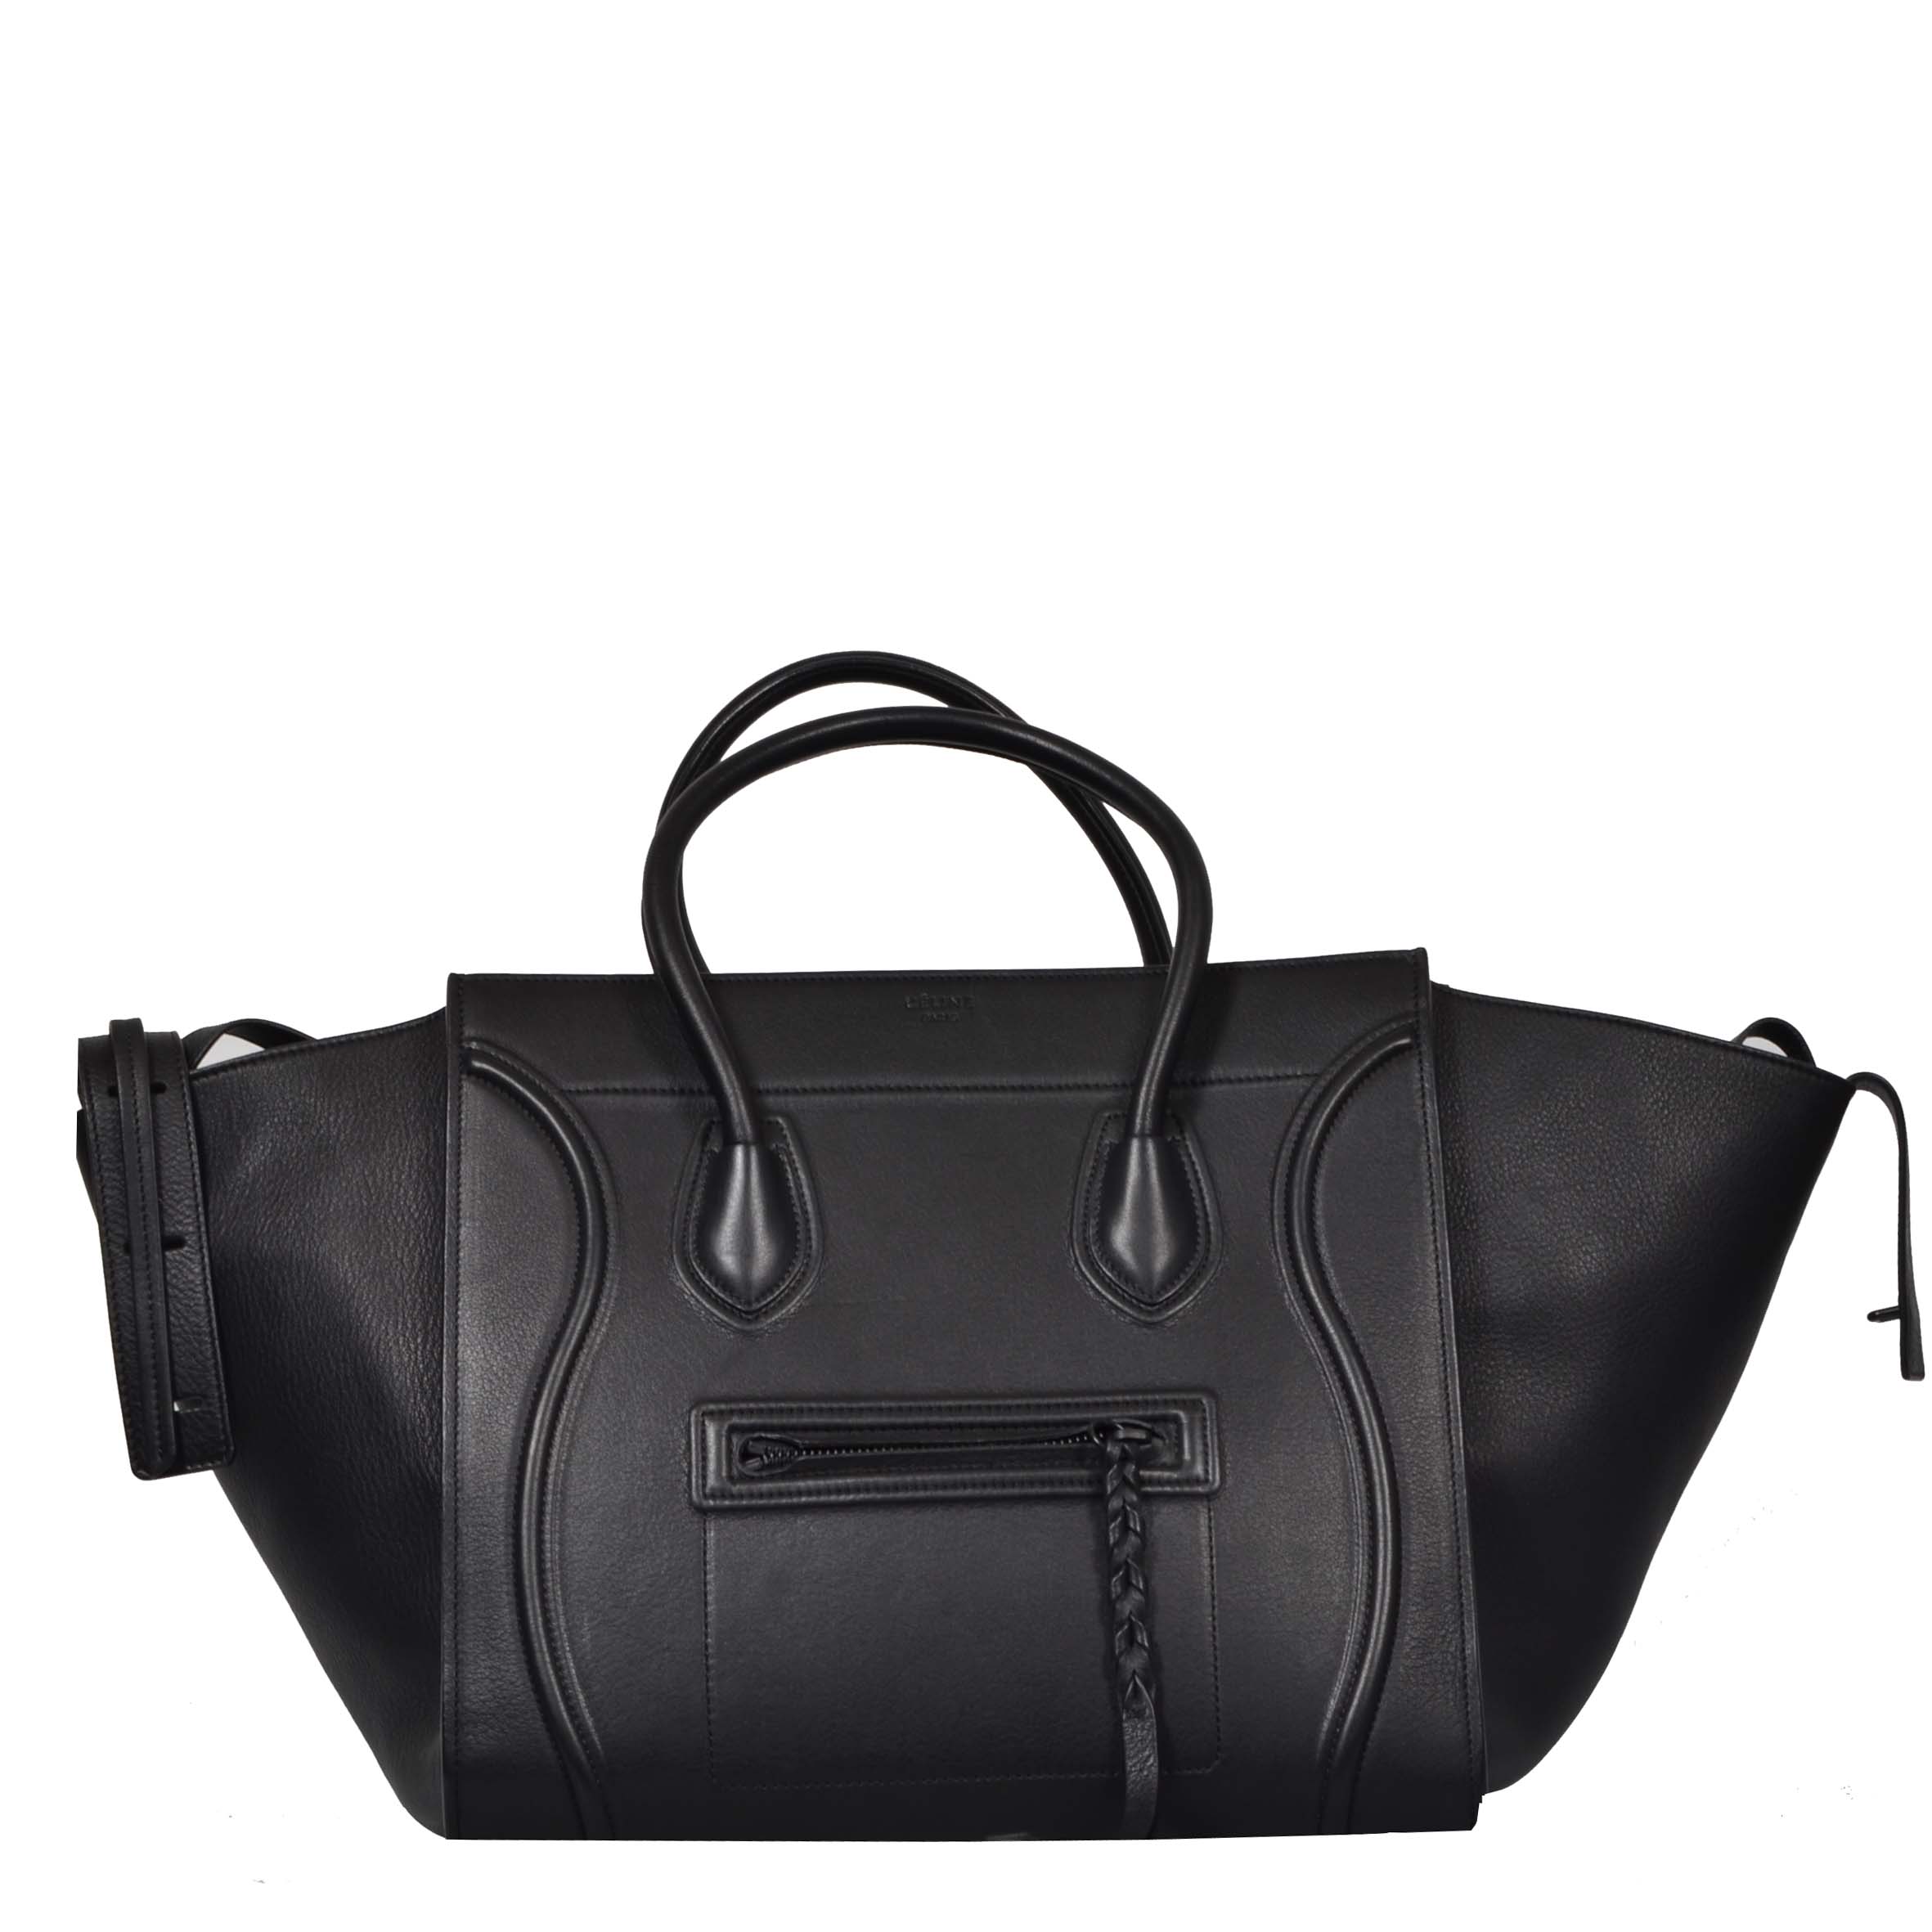 Celine Tasche Luggage Glatt Leder Schwarz Smooth Leather Black